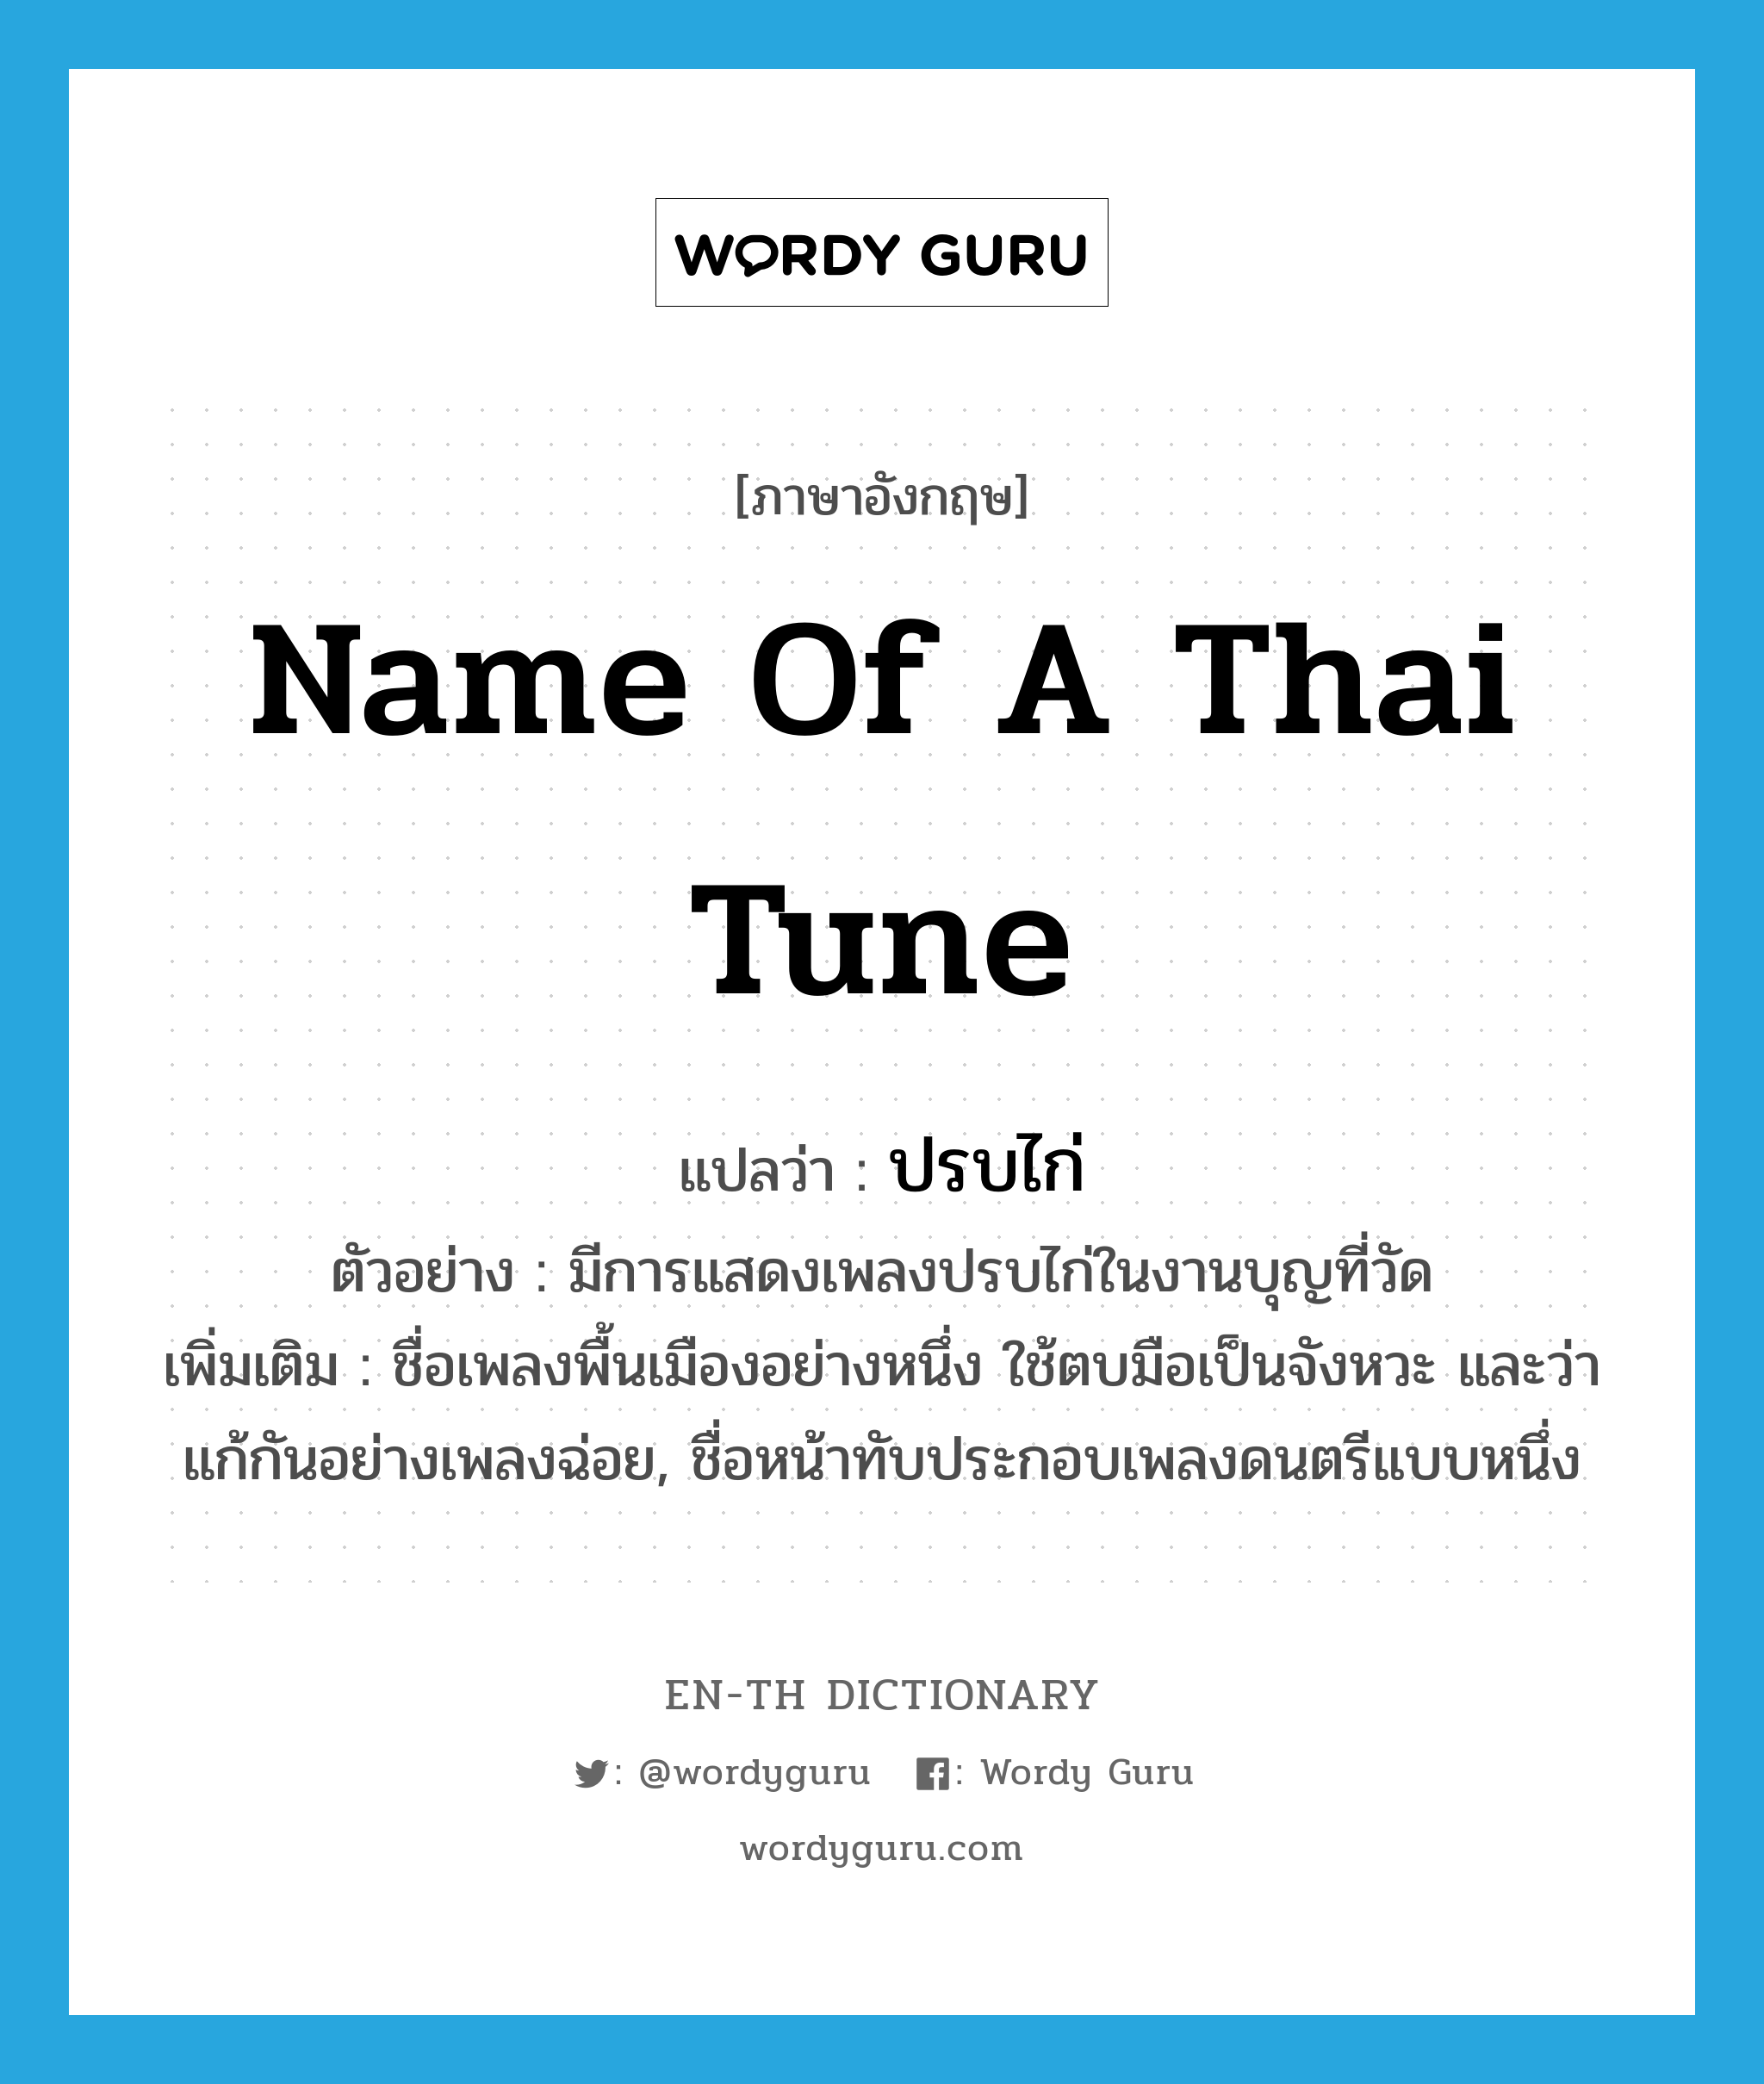 name of a Thai tune แปลว่า?, คำศัพท์ภาษาอังกฤษ name of a Thai tune แปลว่า ปรบไก่ ประเภท N ตัวอย่าง มีการแสดงเพลงปรบไก่ในงานบุญที่วัด เพิ่มเติม ชื่อเพลงพื้นเมืองอย่างหนึ่ง ใช้ตบมือเป็นจังหวะ และว่าแก้กันอย่างเพลงฉ่อย, ชื่อหน้าทับประกอบเพลงดนตรีแบบหนึ่ง หมวด N